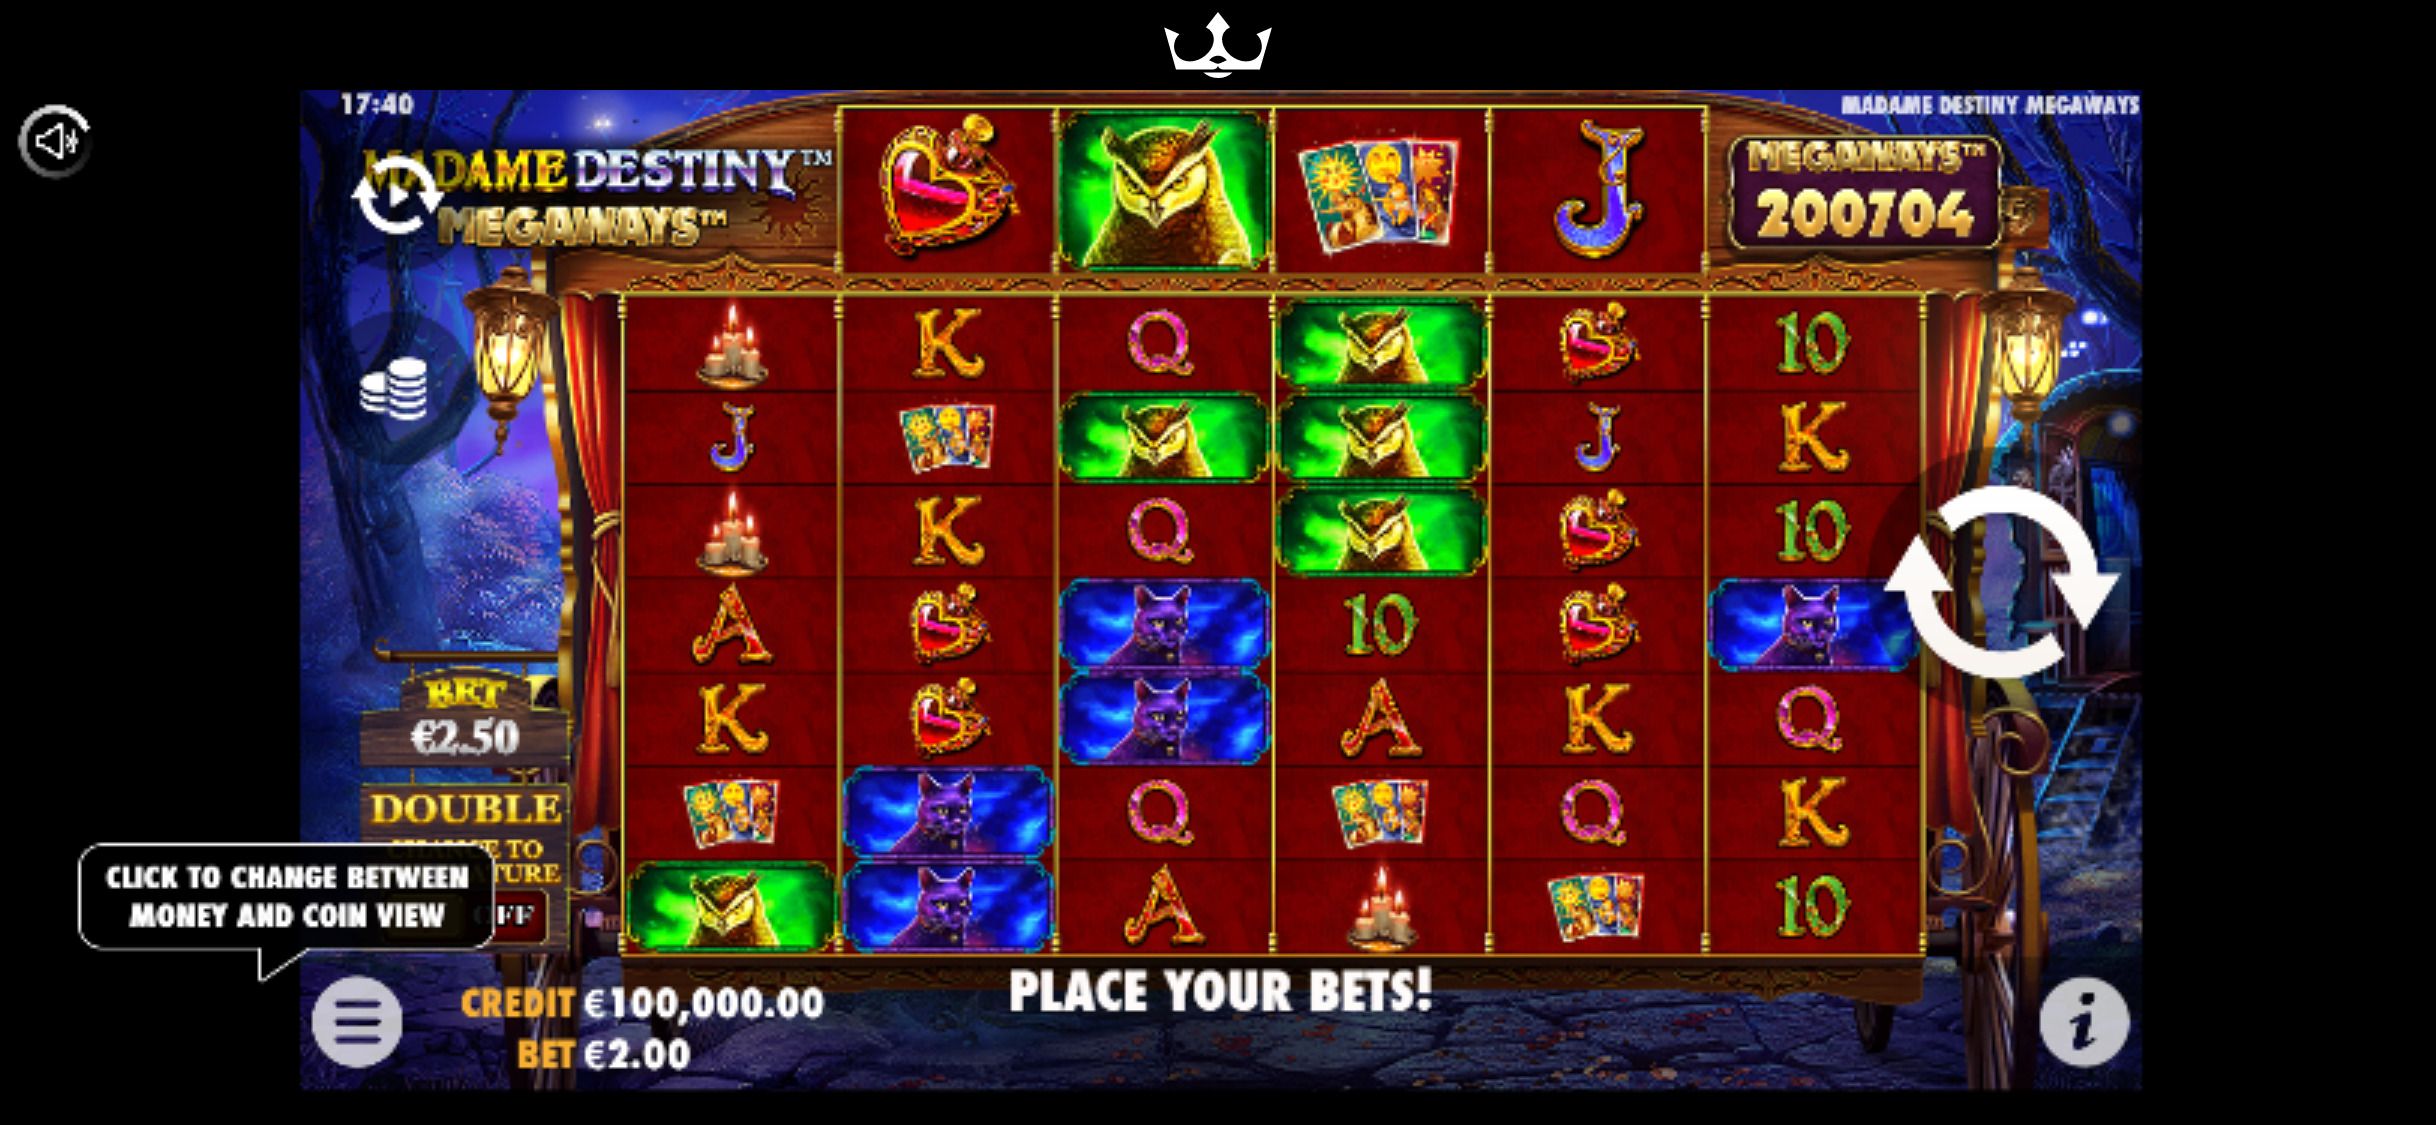 Royal Panda Casino Mobile Slot Games Review